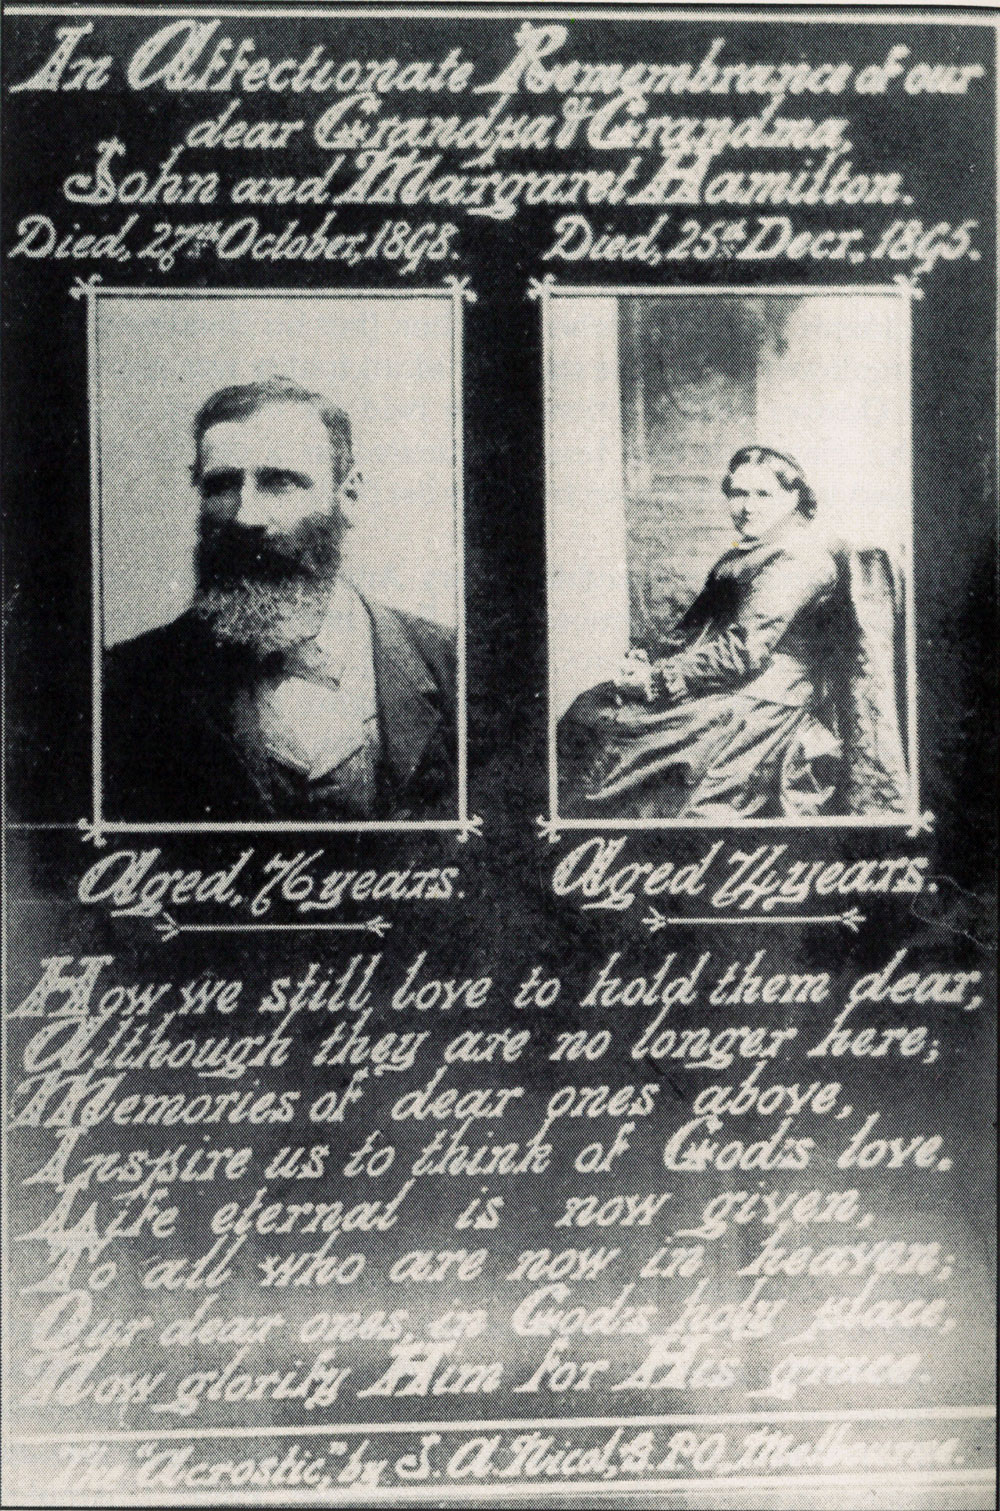 John and Margaret Hamilton Memorial Card